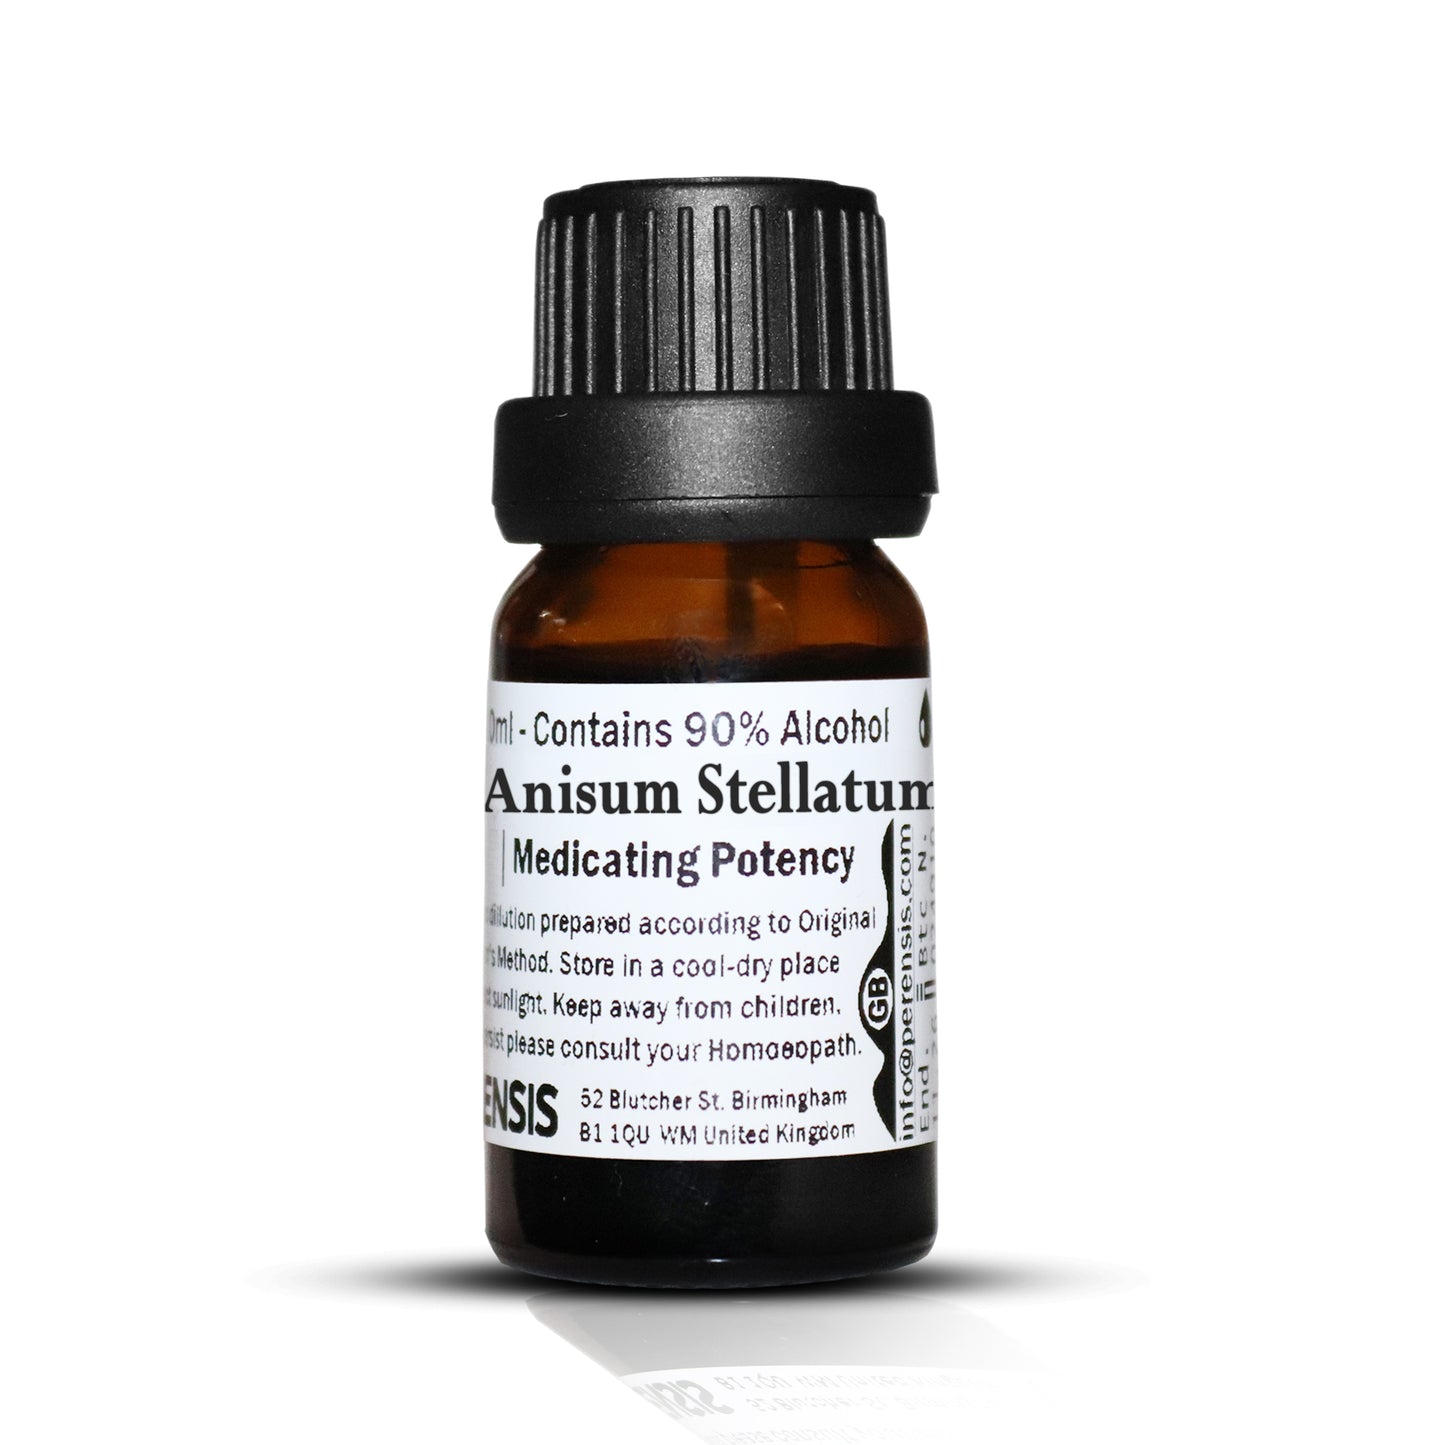 Anisum Stellatum